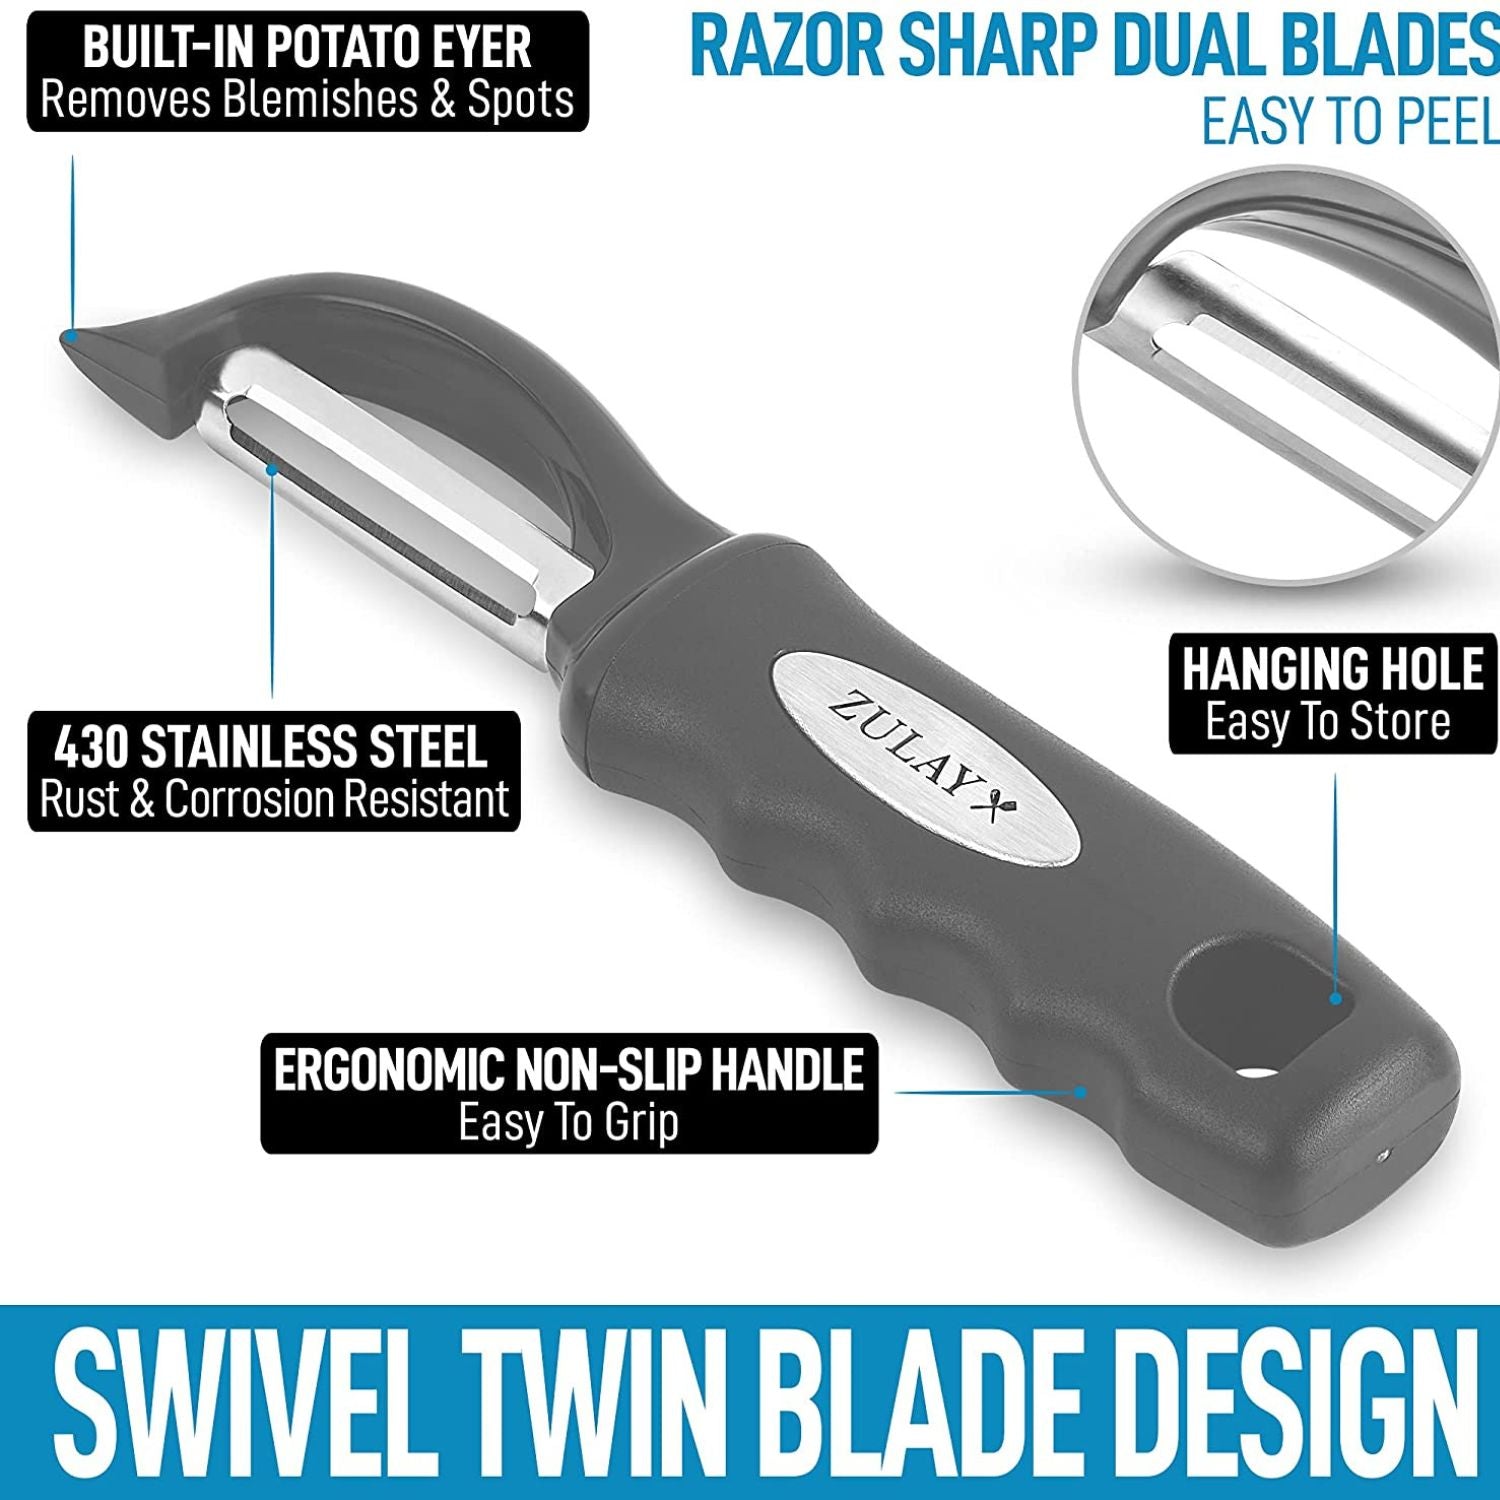 Farberware Professional Swivel Peeler Stainless Steel Blade in Black 